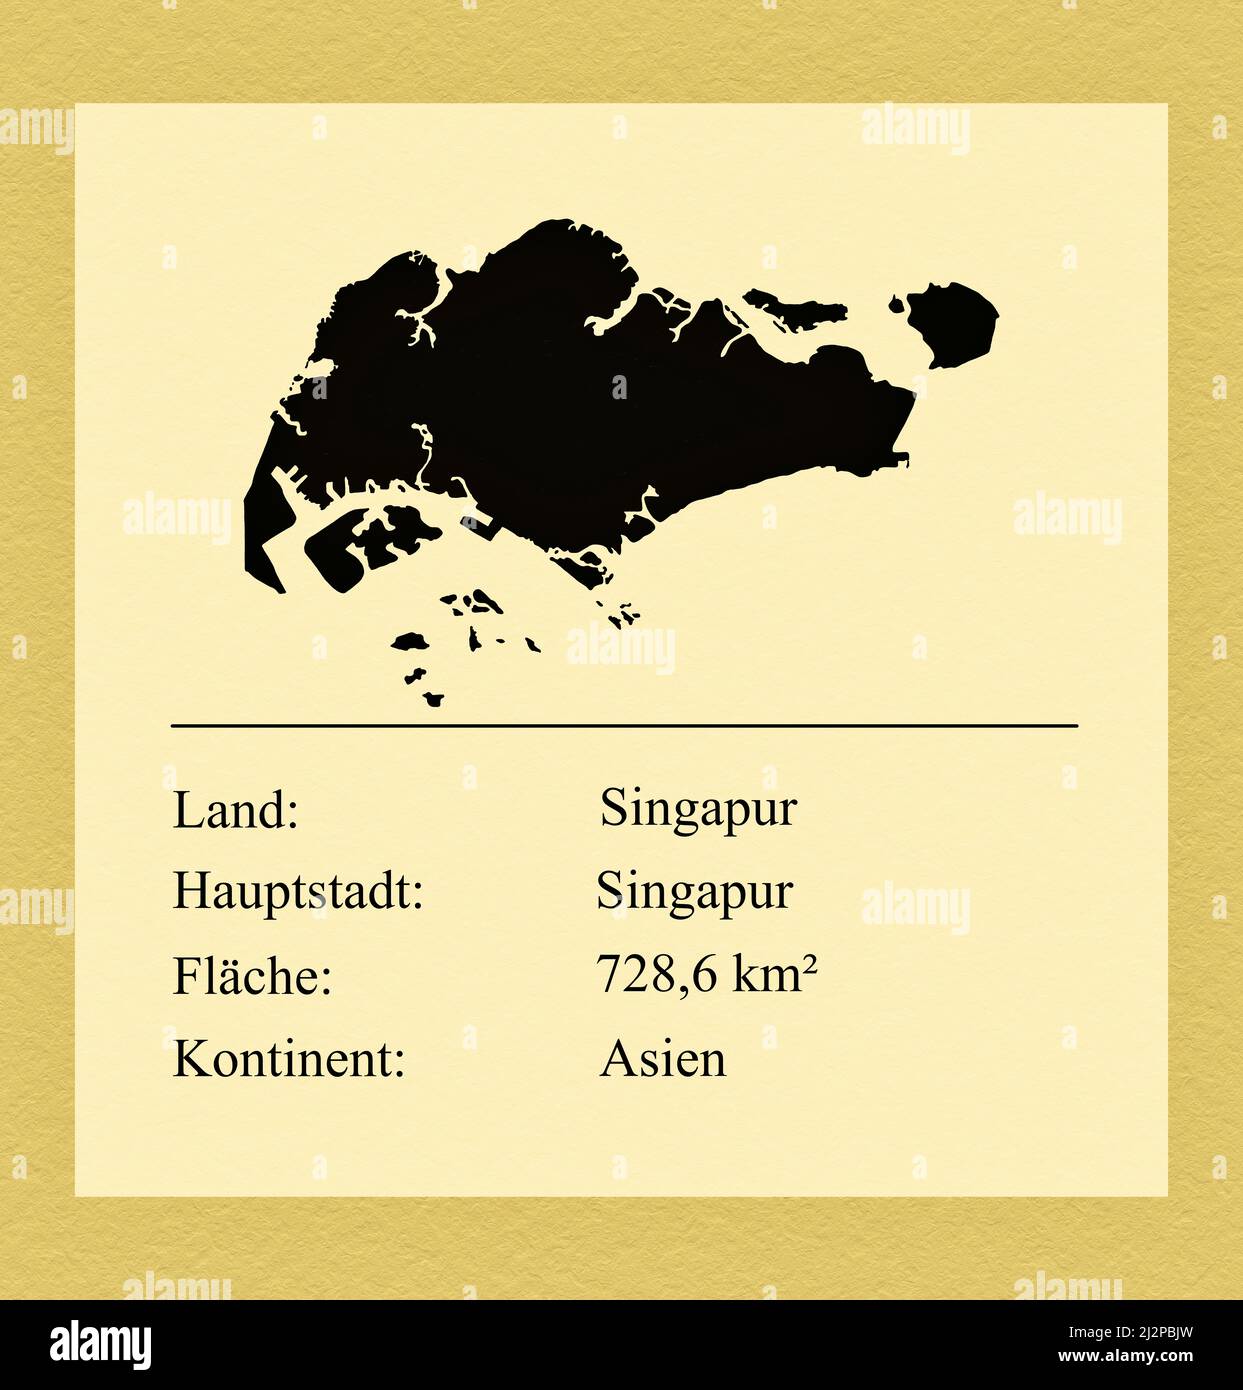 Umrisse des Landes Singapur, darunter ein kleiner Steckbrief mit Ländernamen, Hauptstadt, Fläche und Kontinent Stock Photo